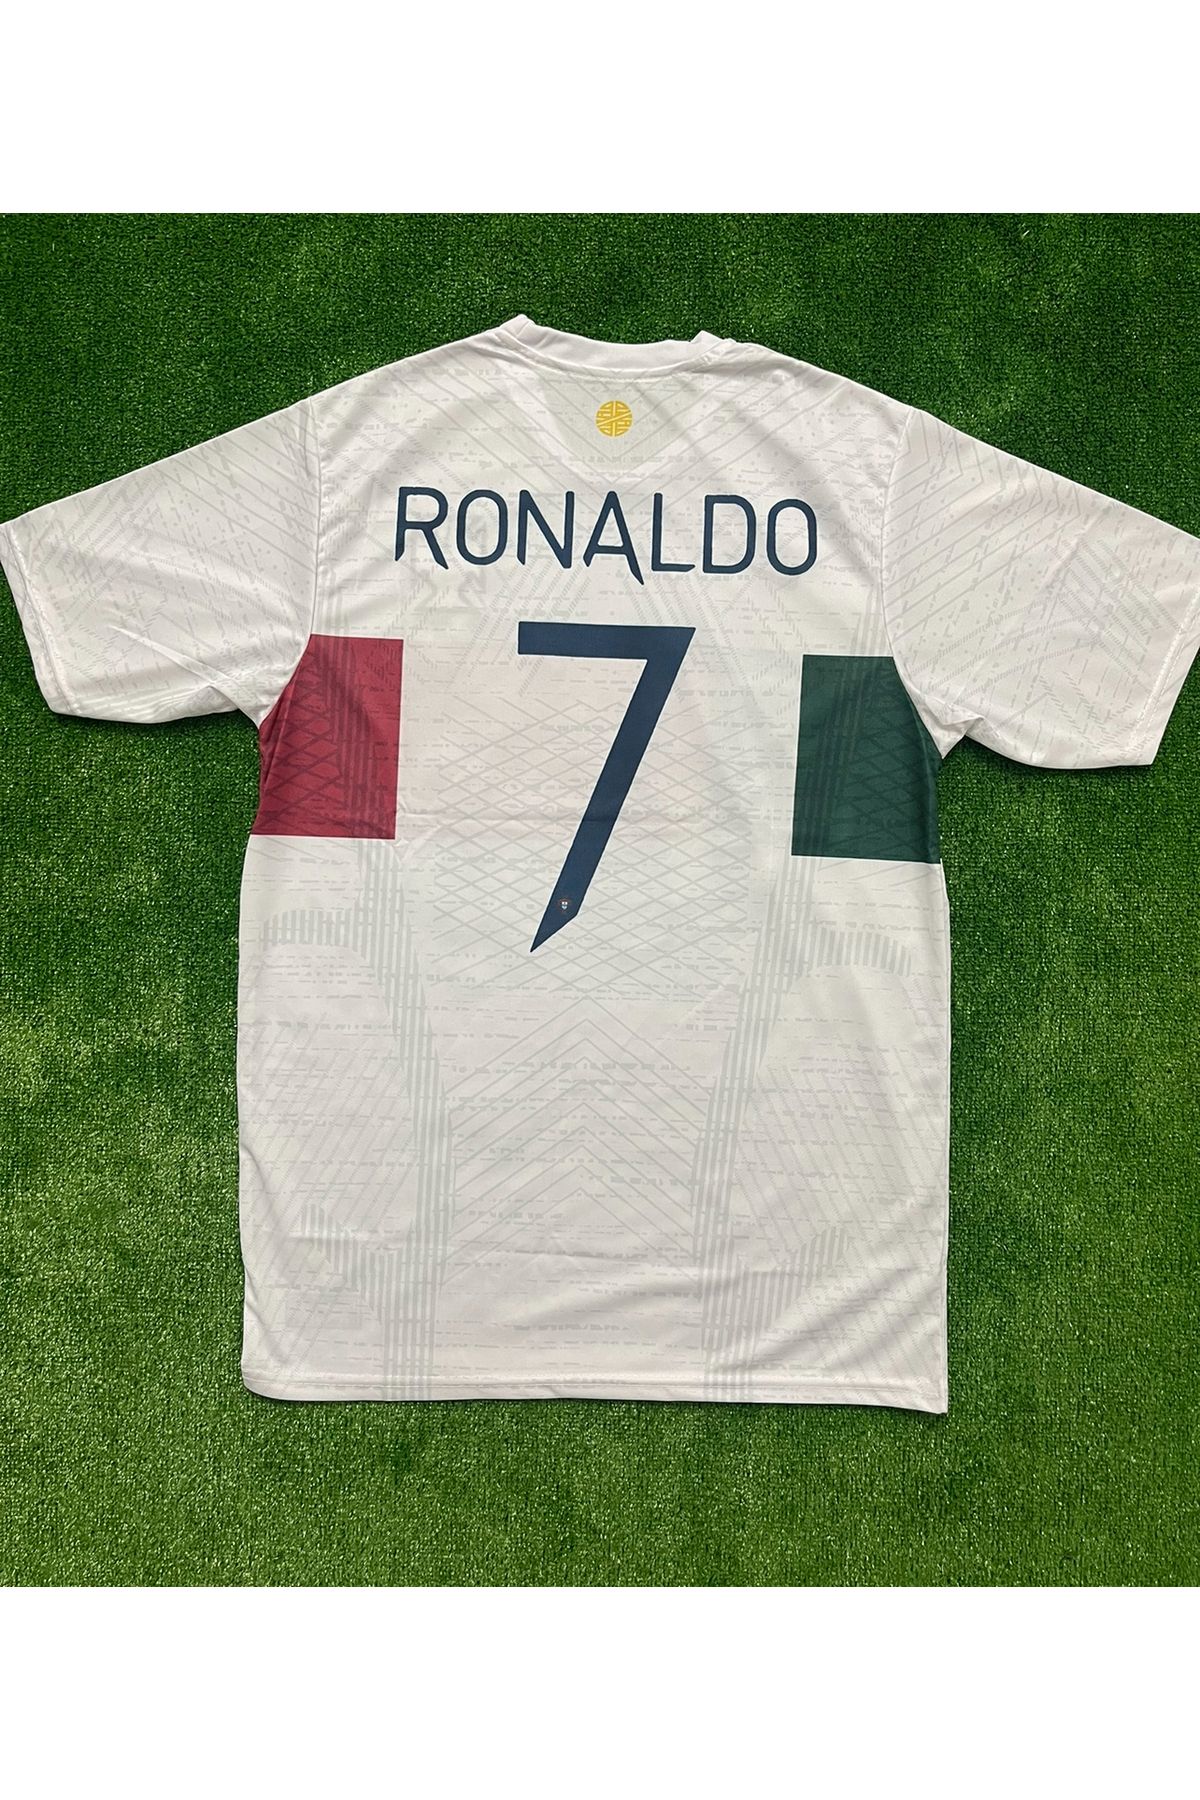 SPORTBACK Portekiz 2022 Dünya Kupası Cristiano Ronaldo Deplasman Forması